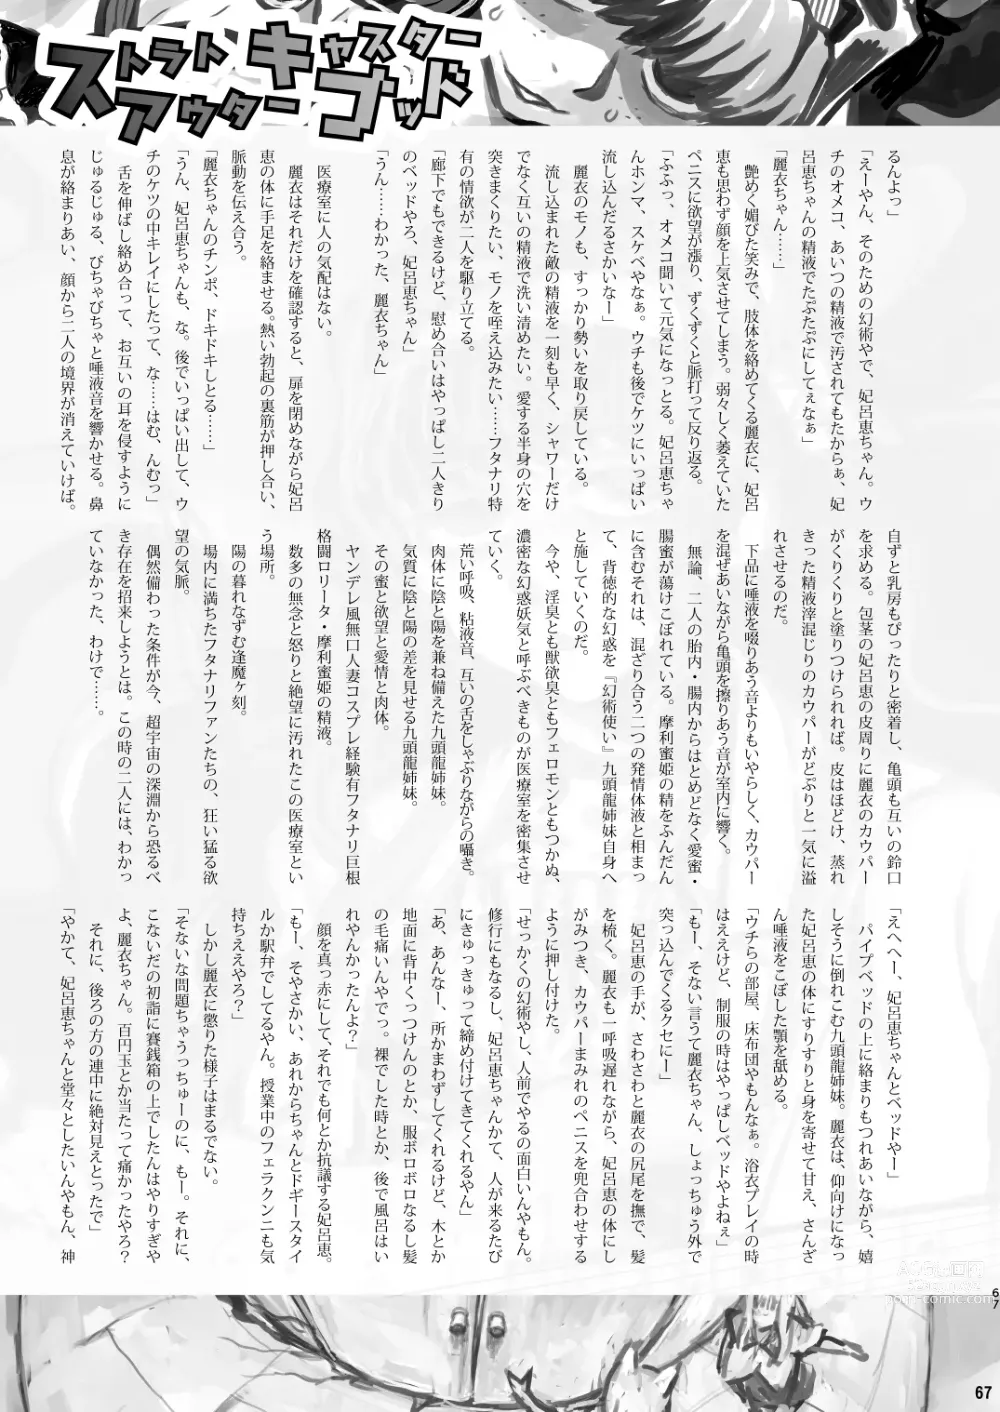 Page 67 of doujinshi Chijo de Injuu